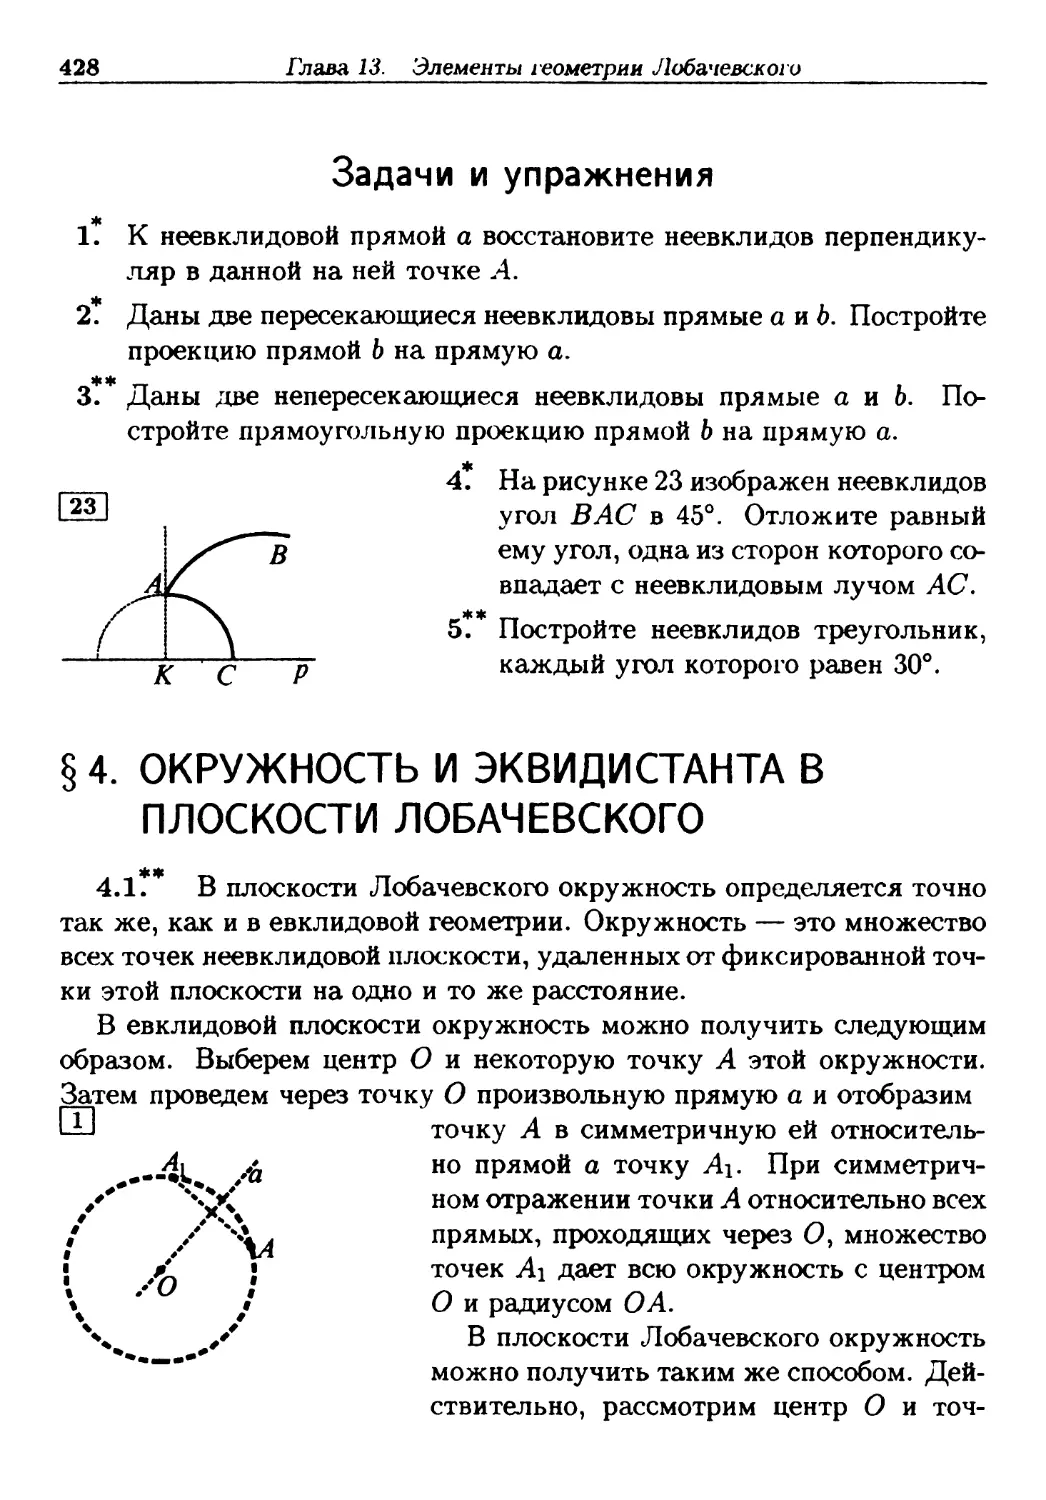 §4. Окружность и эквидистанта в плоскости Лобачевского